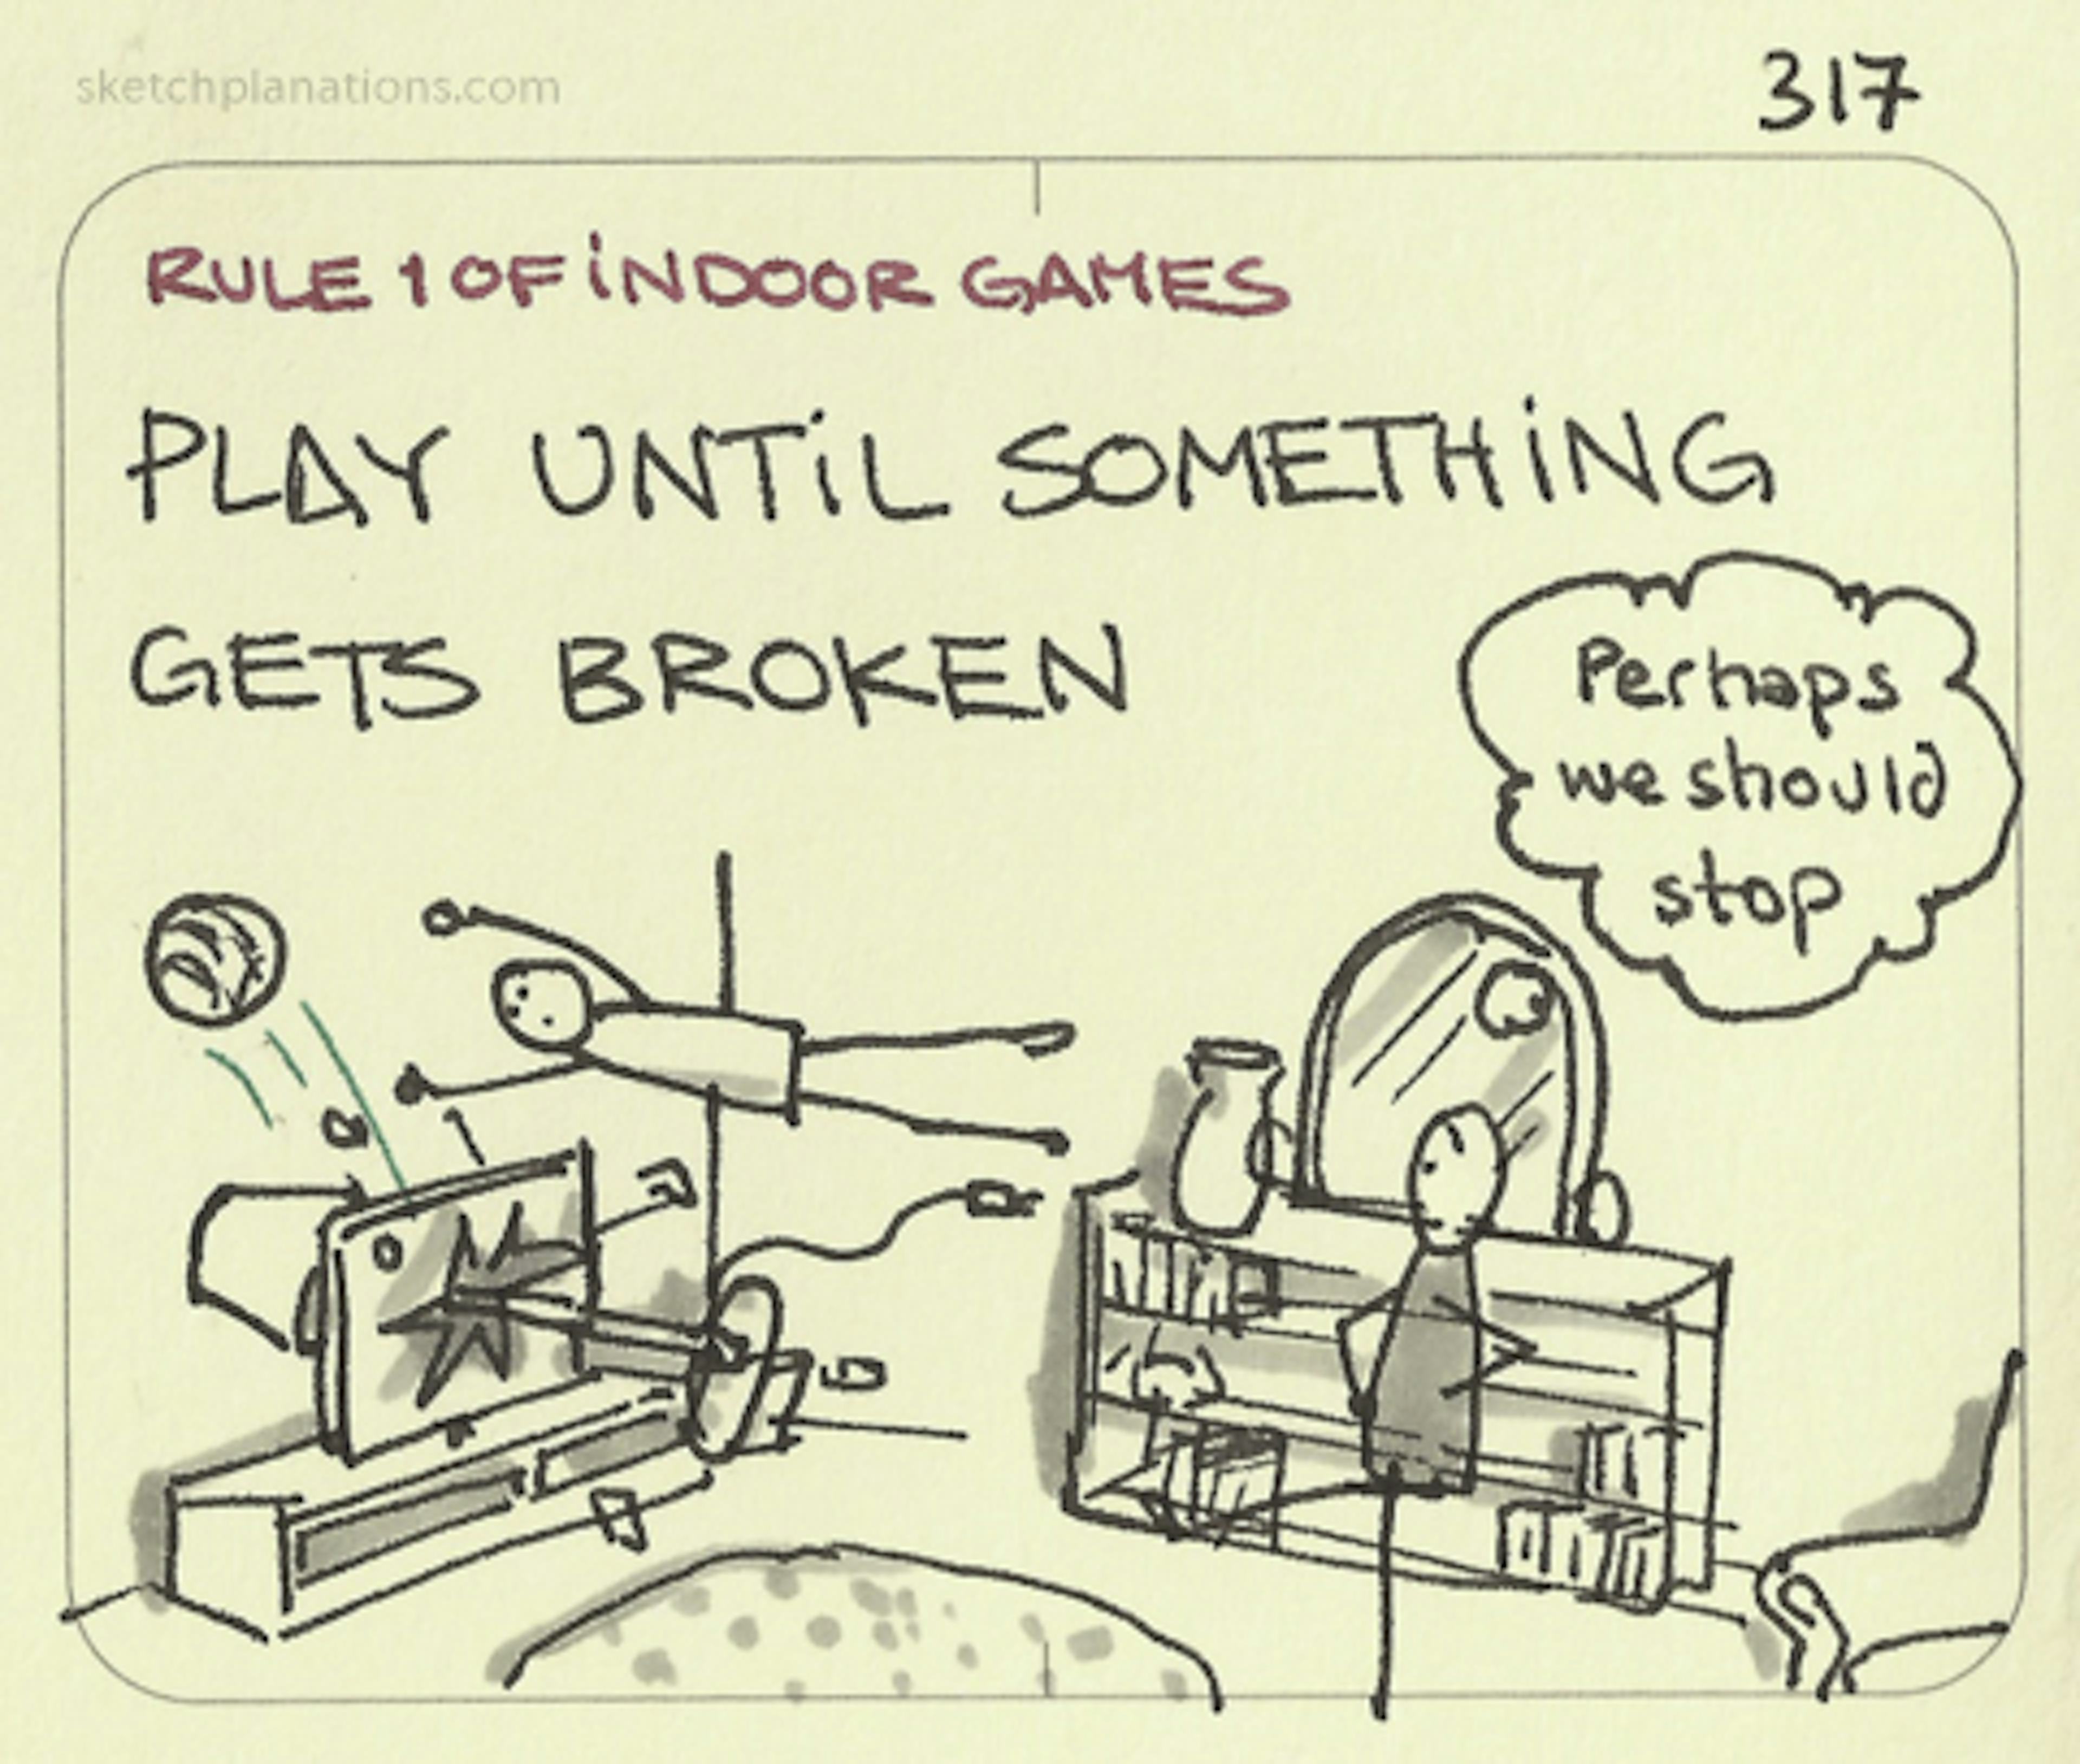 Rule 1 of indoor games: Play until something gets broken - Sketchplanations